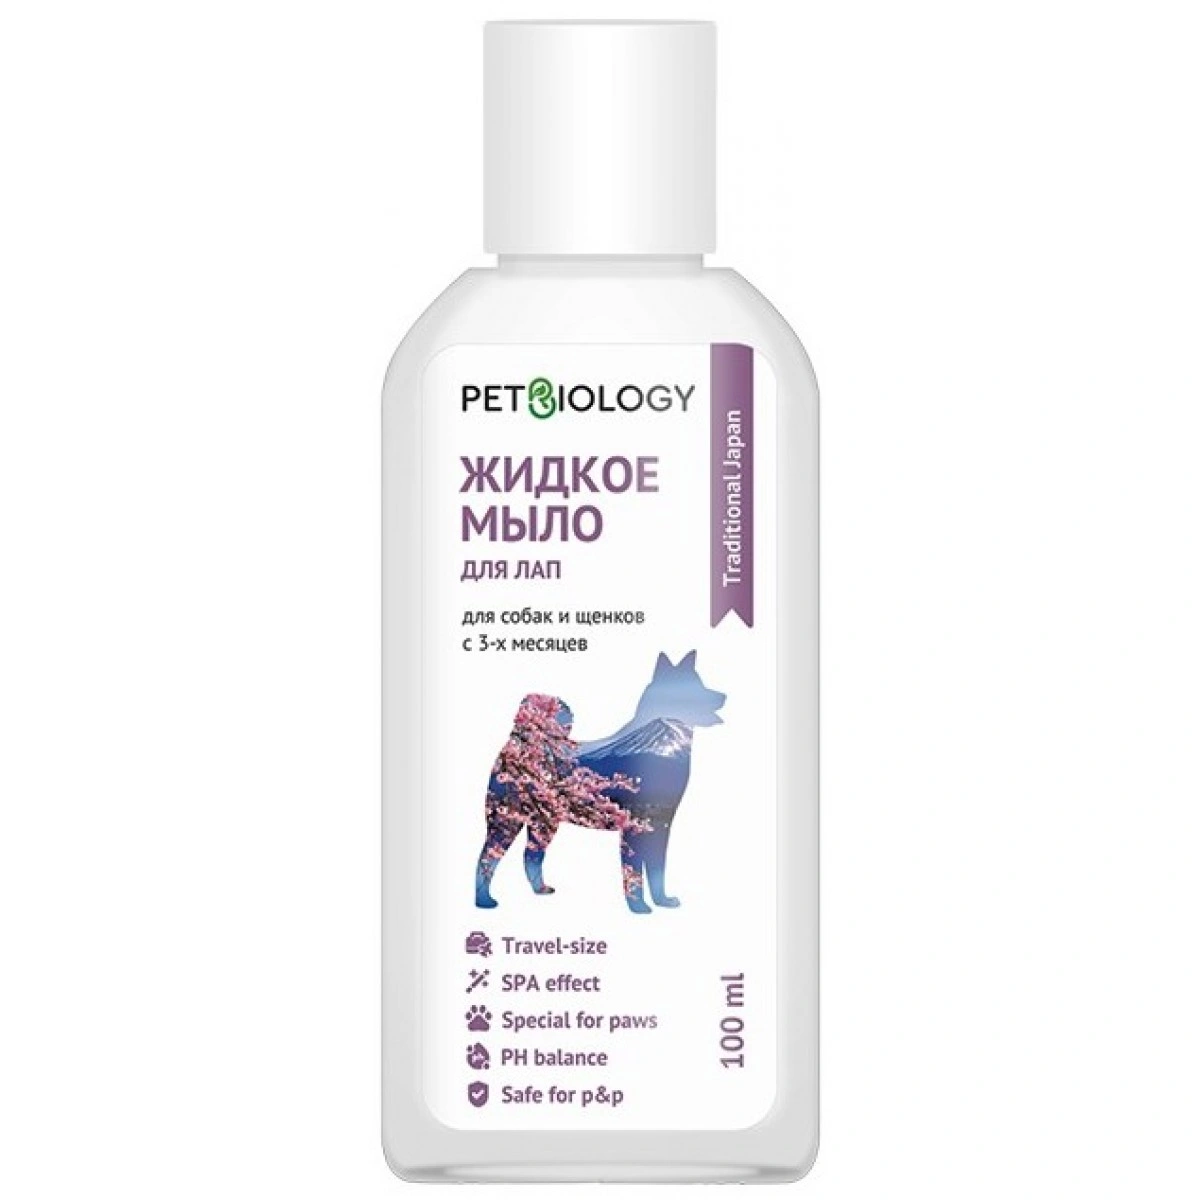 PetBiology 100 мл Жидкое мыло для лап для собак, Япония